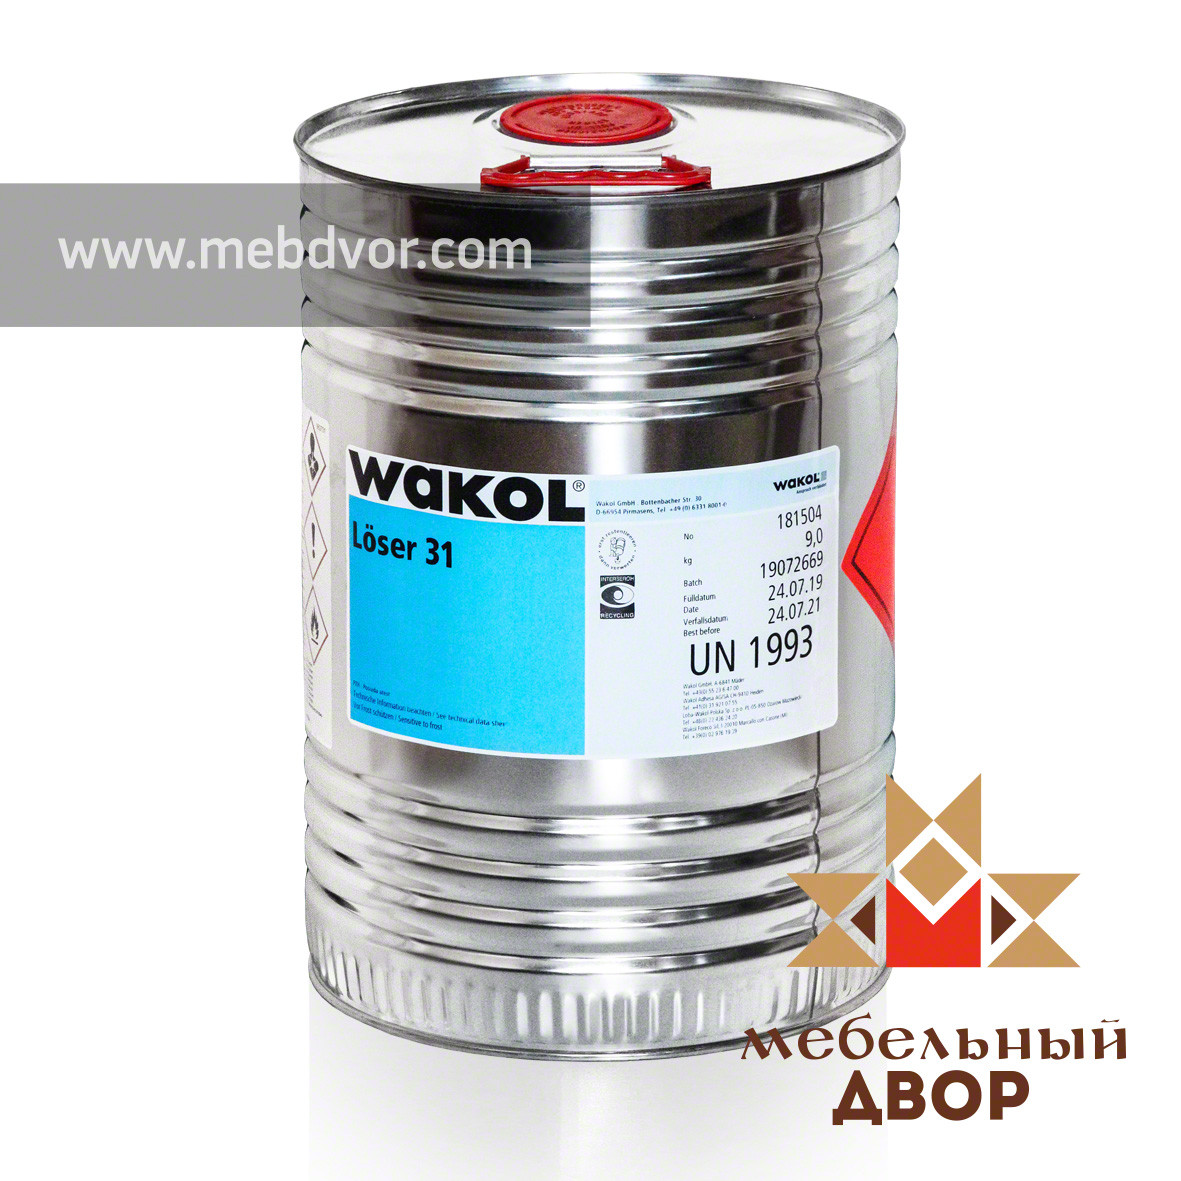 Растворитель WAKOL LOSER 31 (9 кг.)